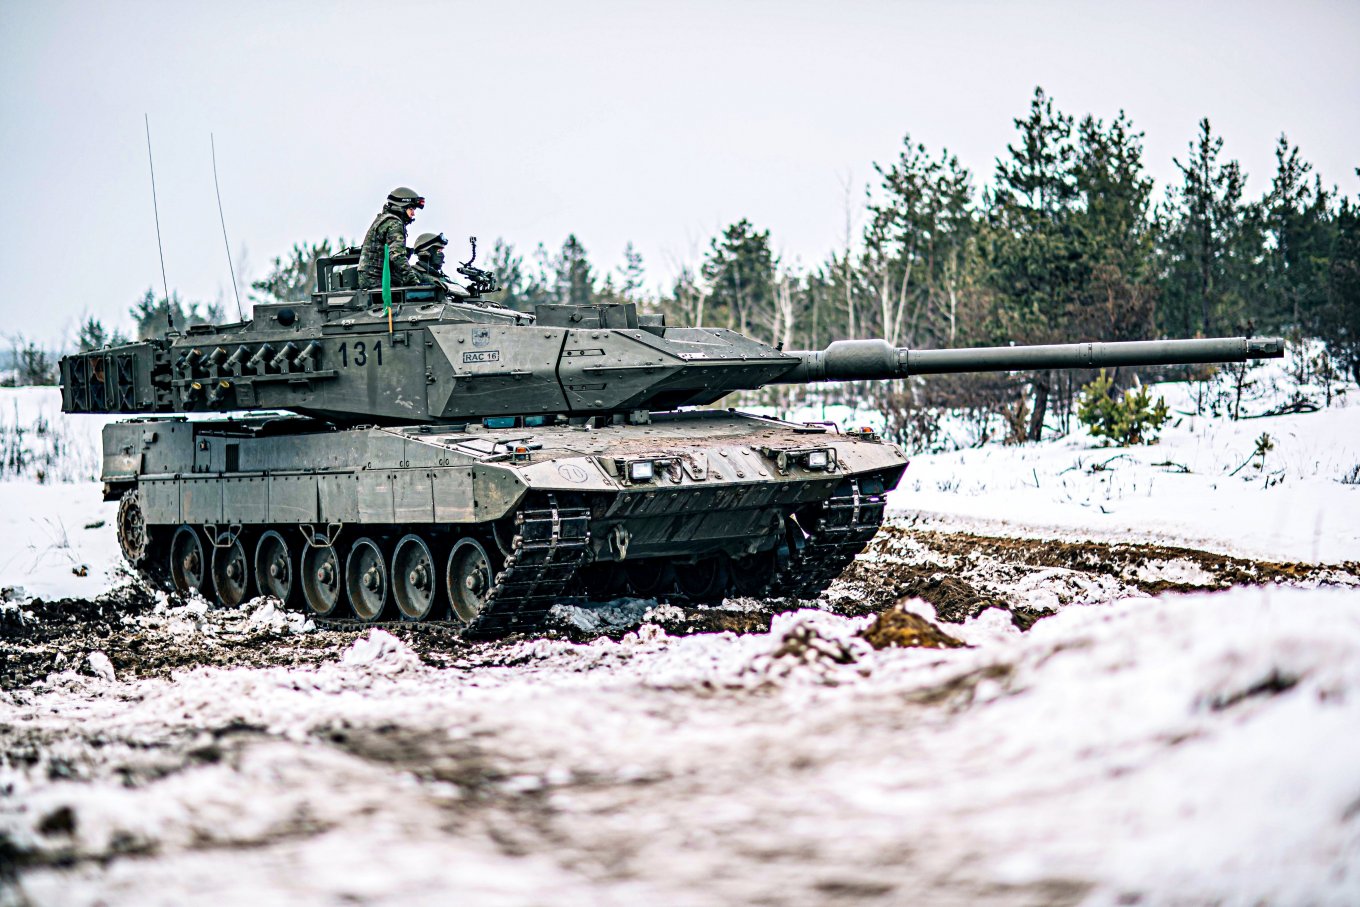 Với 20 chiếc Leopard 2 được hứa hẹn cung cấp cho Ukraine, Tây Ban Nha trở thành nhà tài trợ lớn nhất, còn bao nhiêu chiếc nữa trong kho, Defense Express